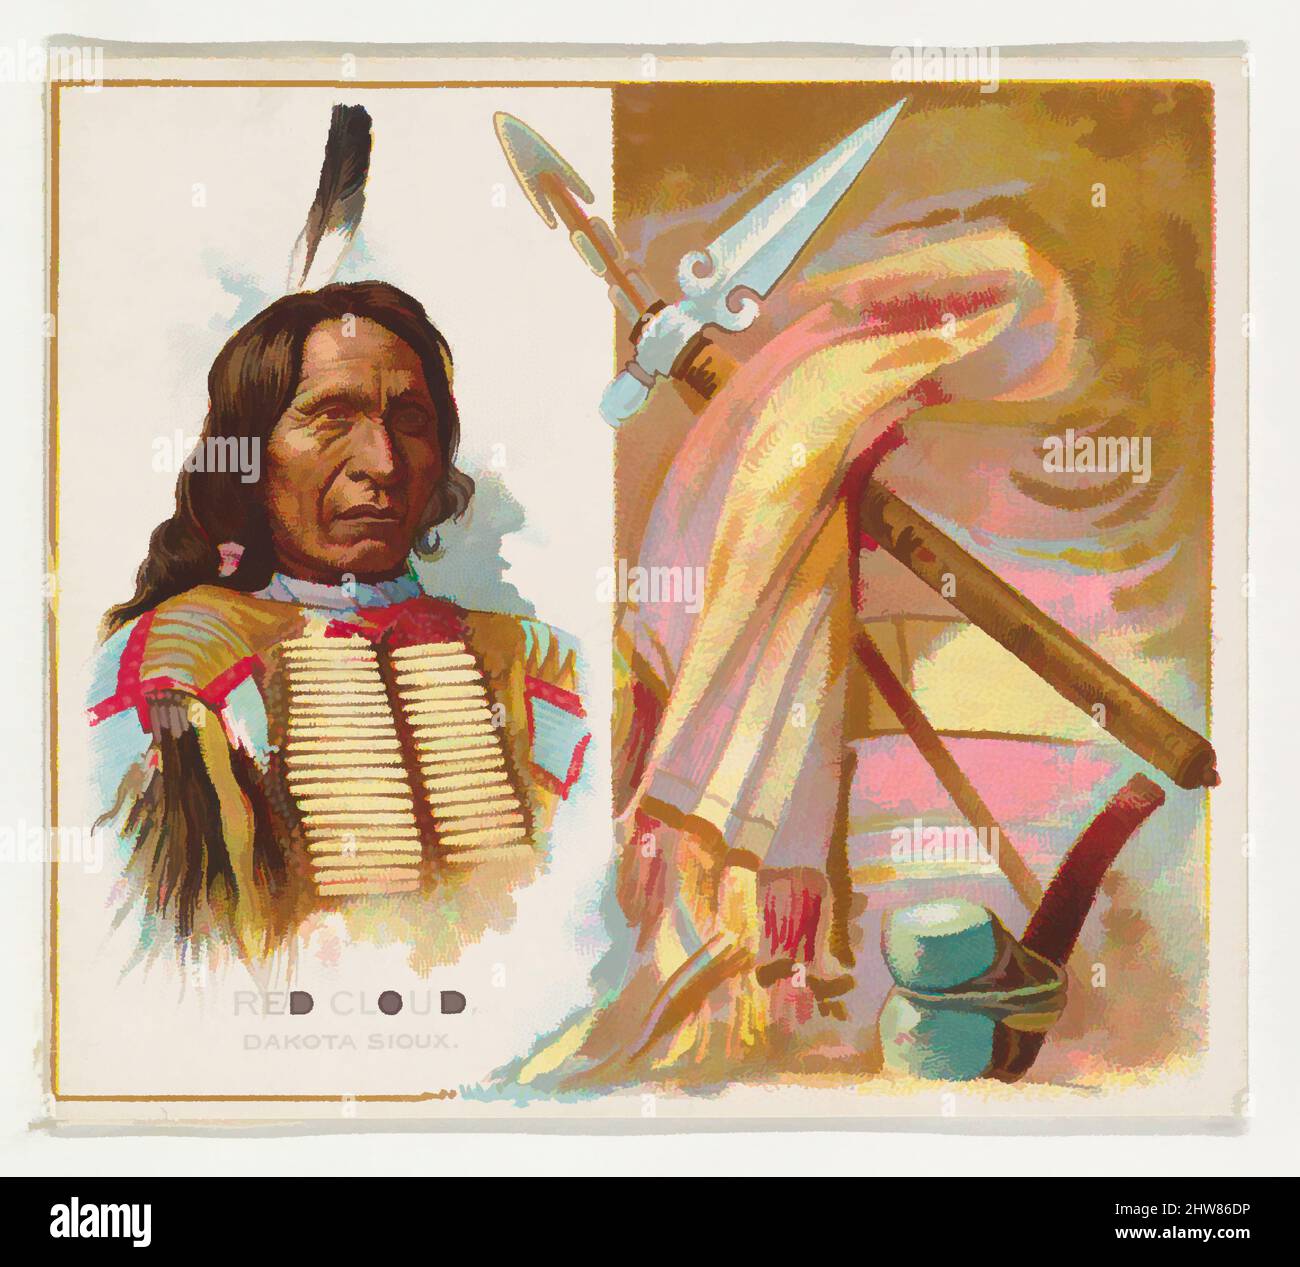 Art inspiré par Red Cloud, Dakota Sioux, de la série American Indian Chiefs (N36) pour les cigarettes Allen & Ginter, 1888, lithographie couleur commerciale, feuille : 2 7/8 x 3 1/4 po. (7,3 x 8,3 cm), cartes professionnelles de la série "American Indian Chiefs" (N36), émises en 1888 dans un ensemble de 50, œuvres classiques modernisées par Artotop avec un peu de modernité. Formes, couleur et valeur, impact visuel accrocheur sur l'art émotions par la liberté d'œuvres d'art d'une manière contemporaine. Un message intemporel qui cherche une nouvelle direction créative. Artistes qui se tournent vers le support numérique et créent le NFT Artotop Banque D'Images